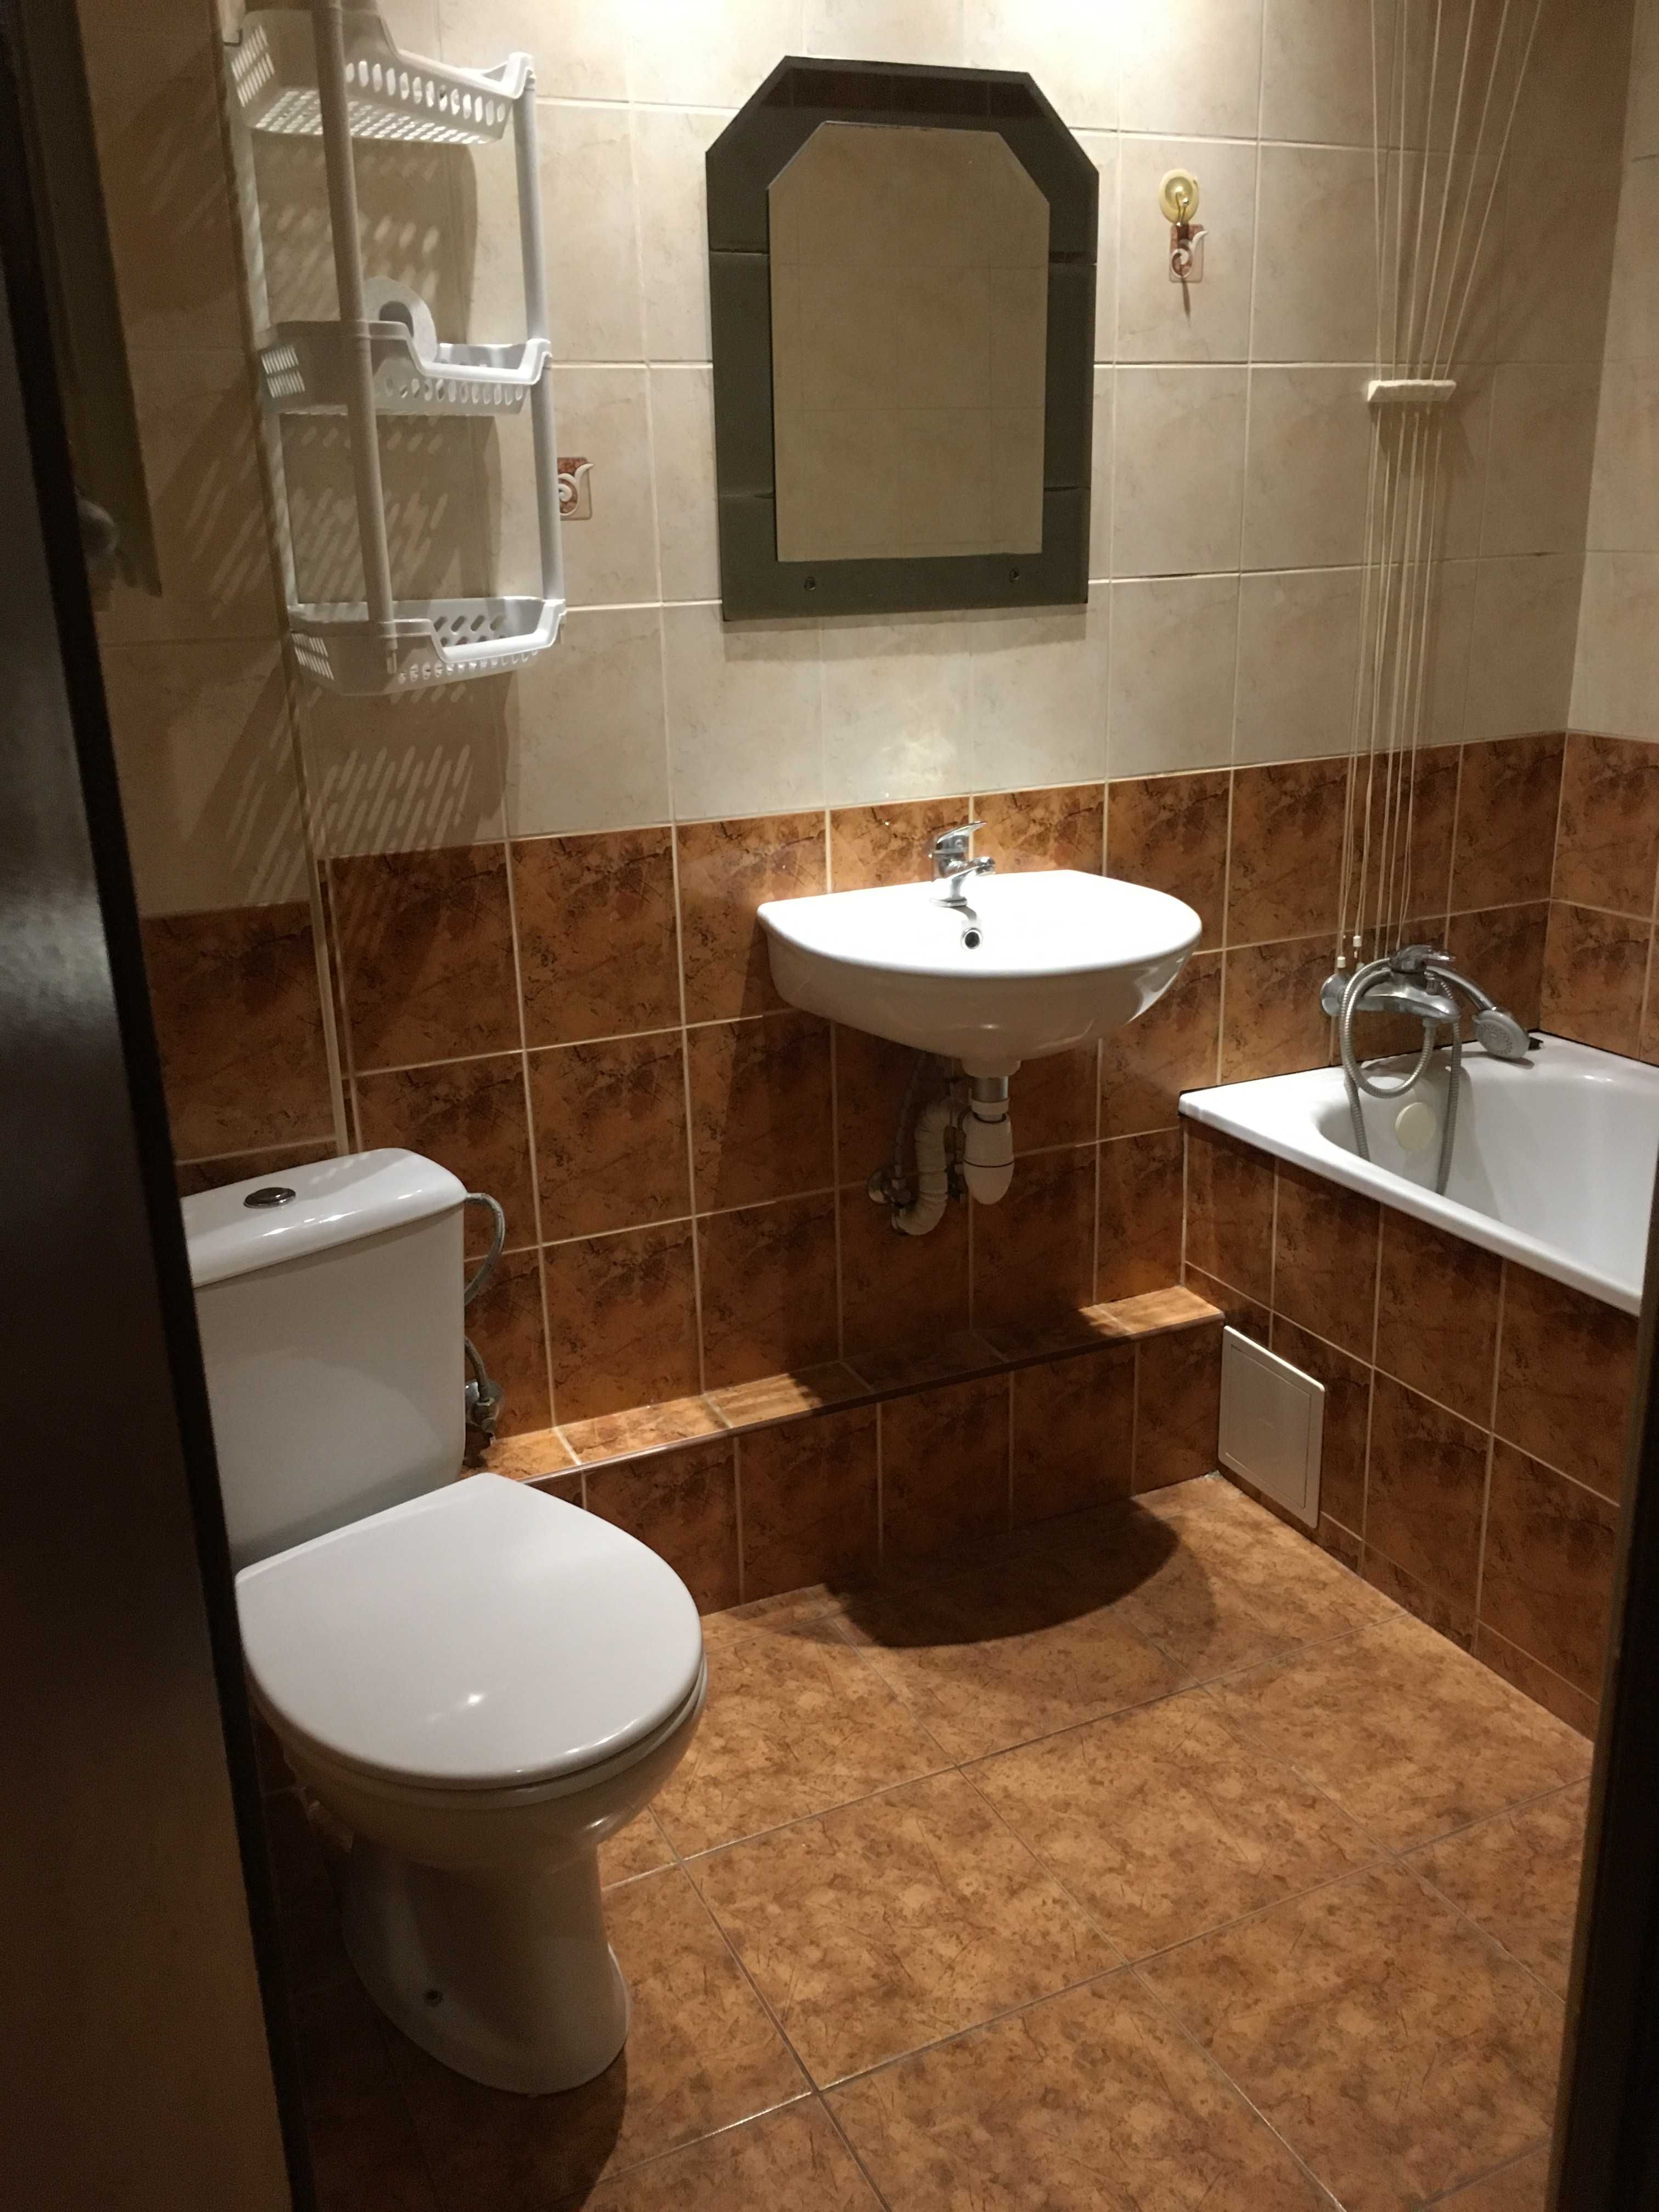 Mieszkanie do wynajecia 2 pokoje kuchnia łazienka centrum Skierniewice